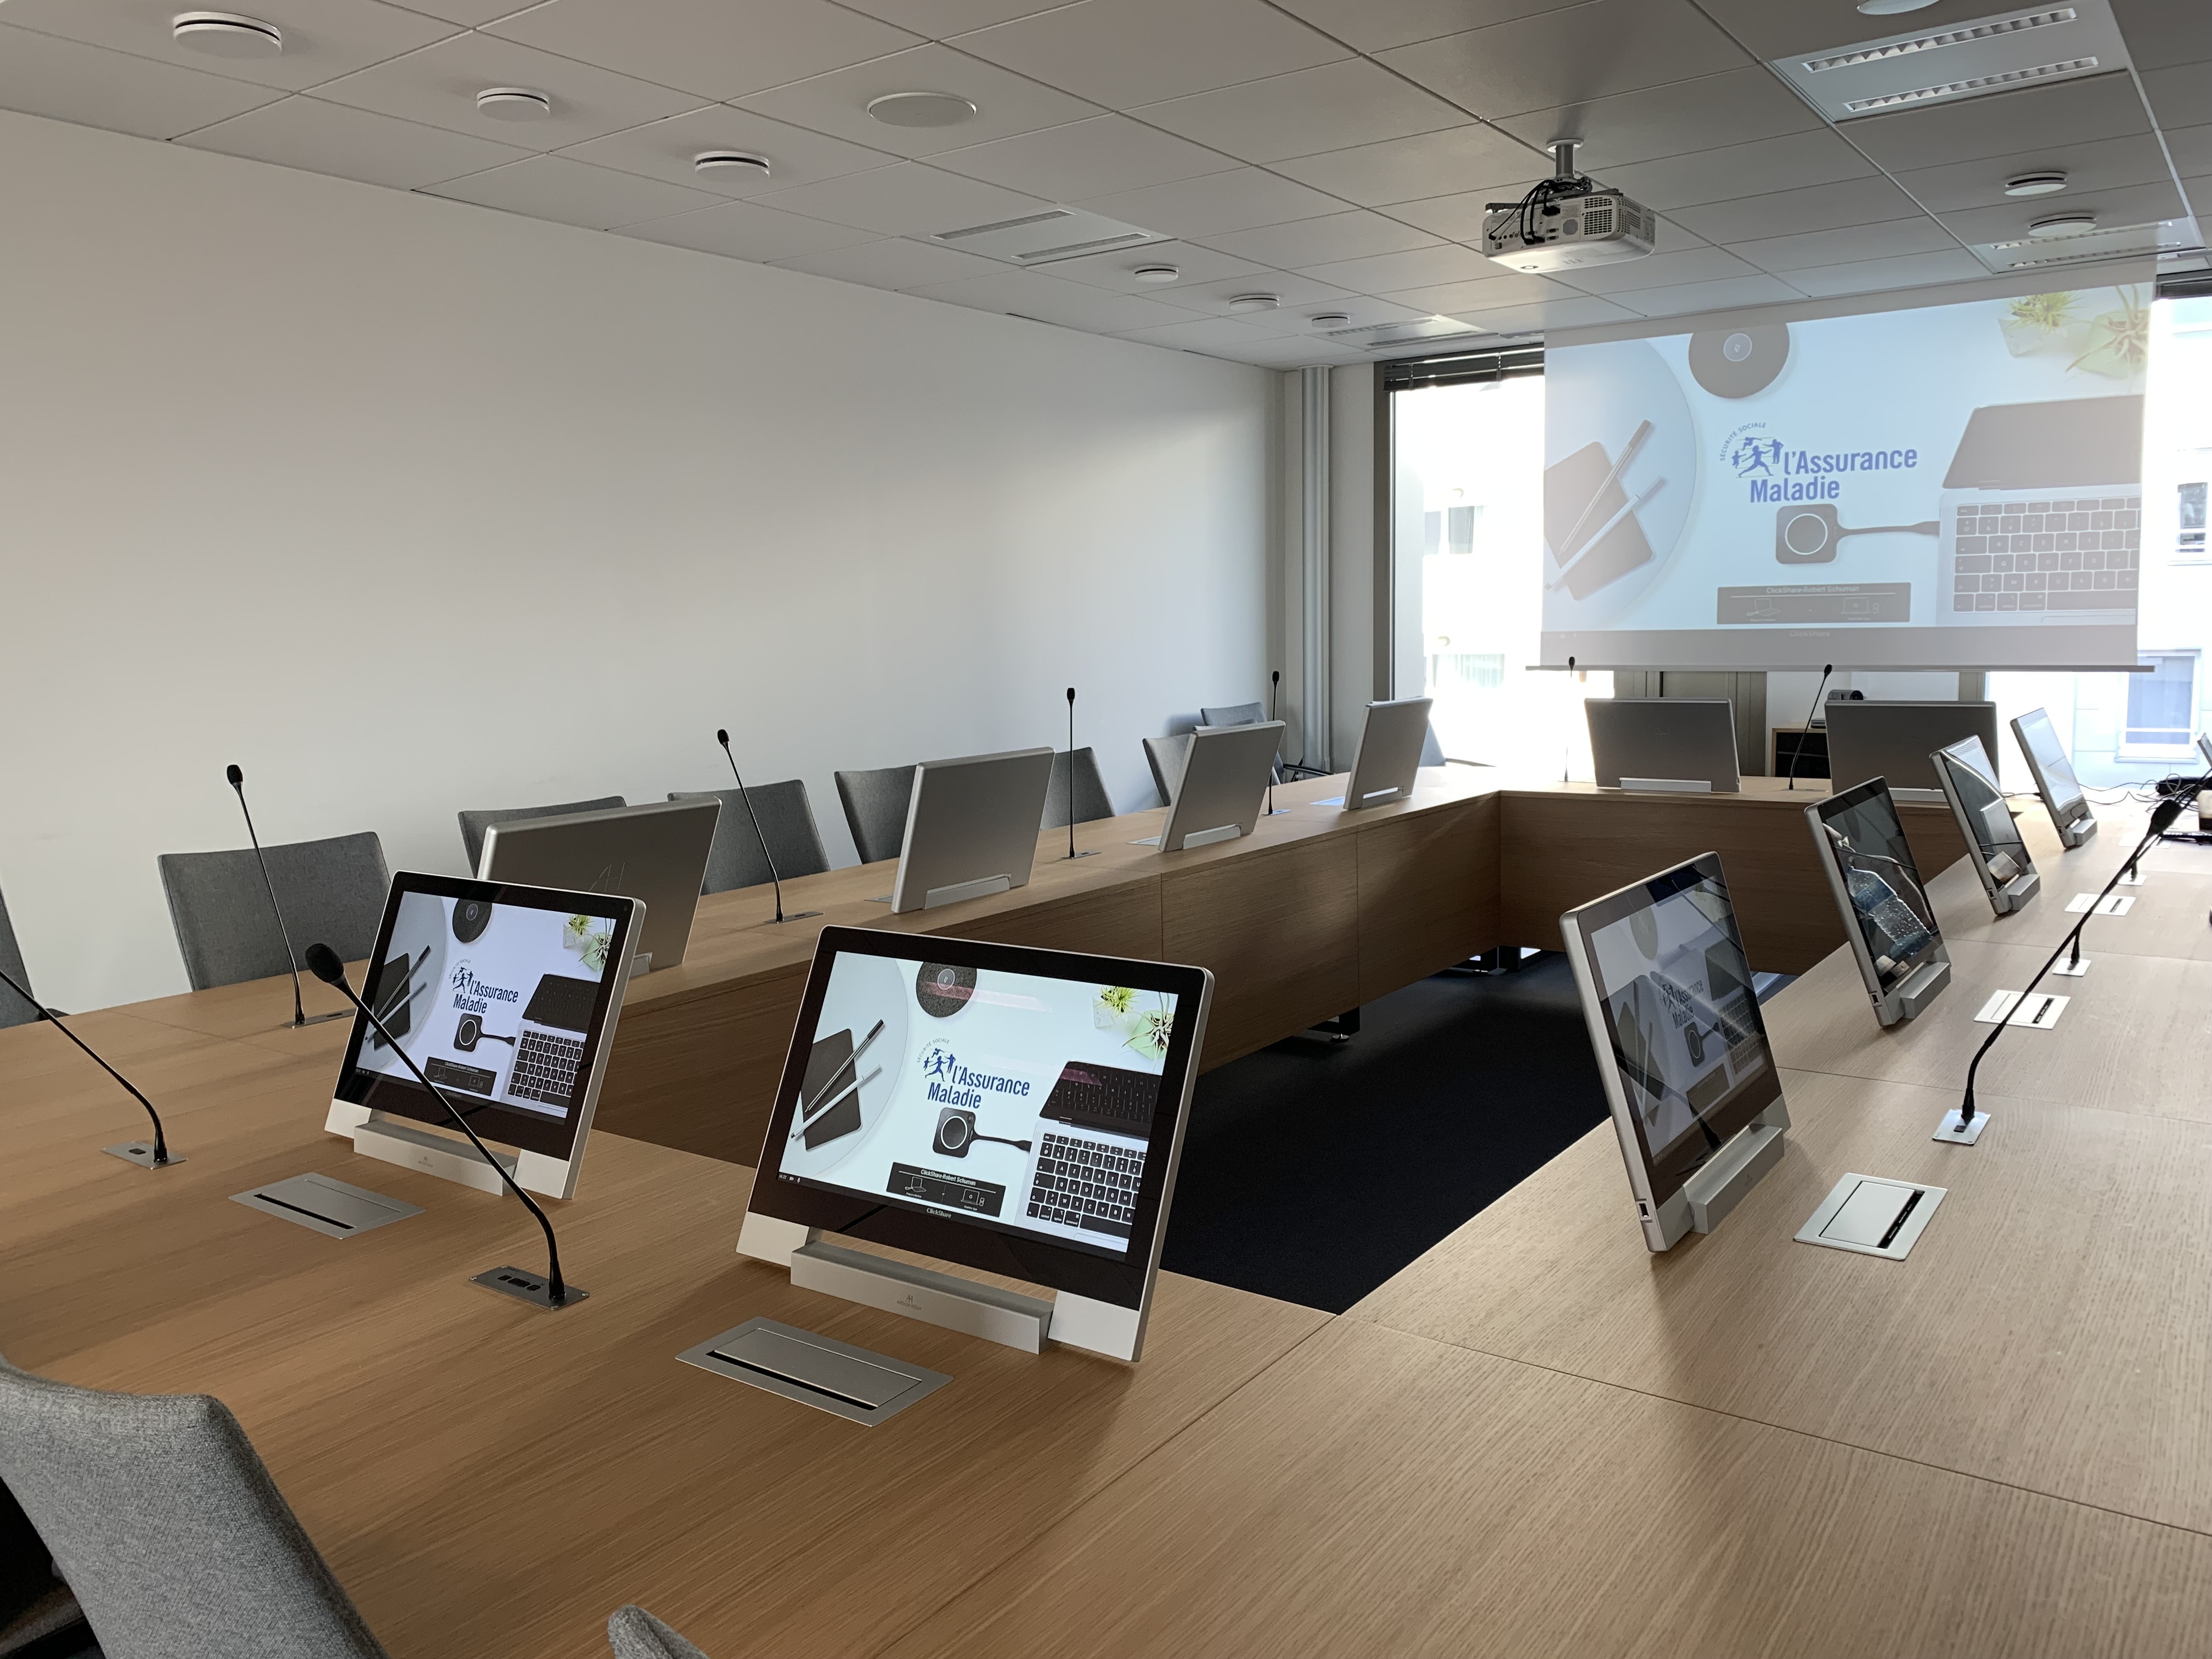 Los monitores plegables AH2 son elegantes y extremadamente fáciles de integrar en cualquier mesa de reuniones. Se pueden abatir manualmente cuando no se necesitan, dejando una vista totalmente despejada de la sala.